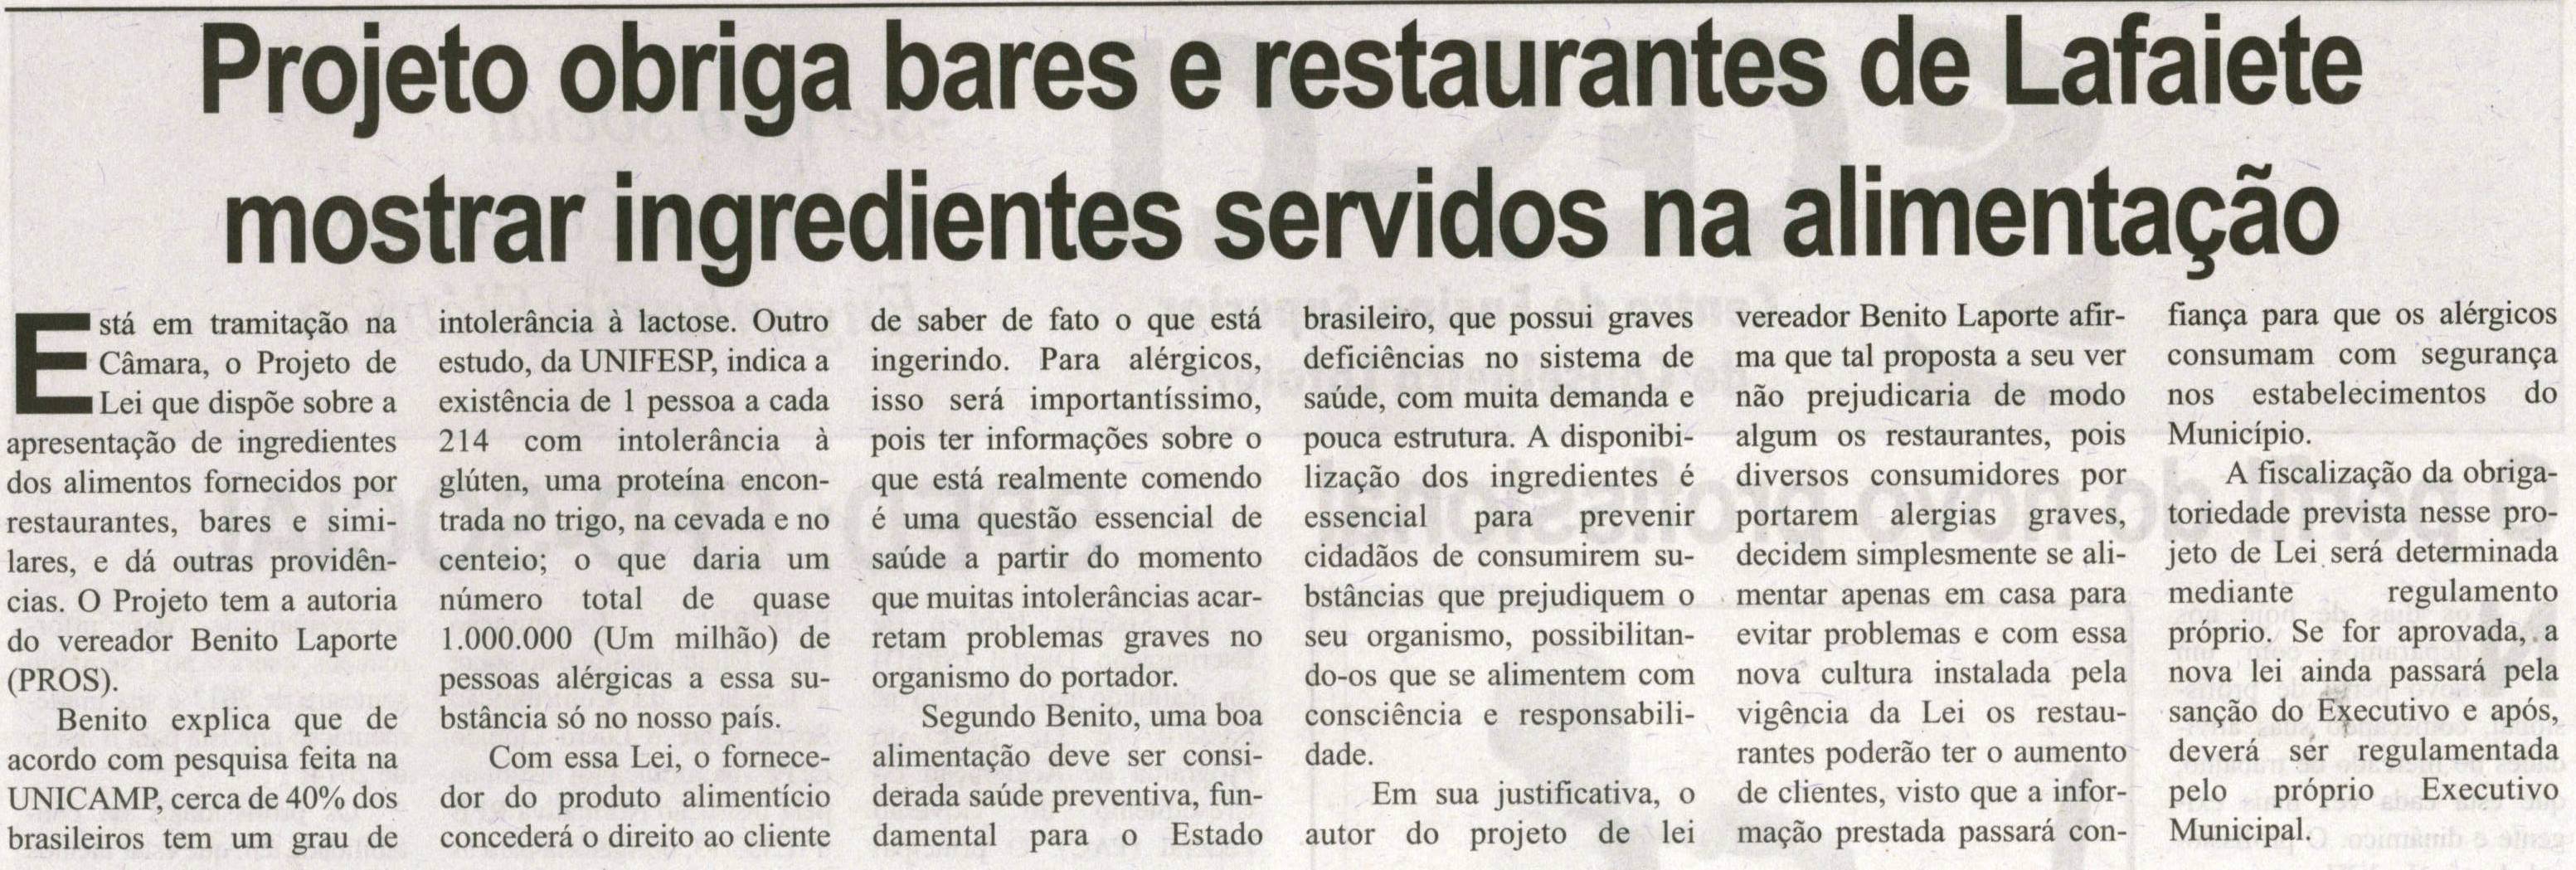 Projeto obriga bares e restaurantes de Lafaiete mostrar ingredientes servidos na alimentação. Correio de Minas, Conselheiro Lafaiete, 01 nov. 2013, p. 7.